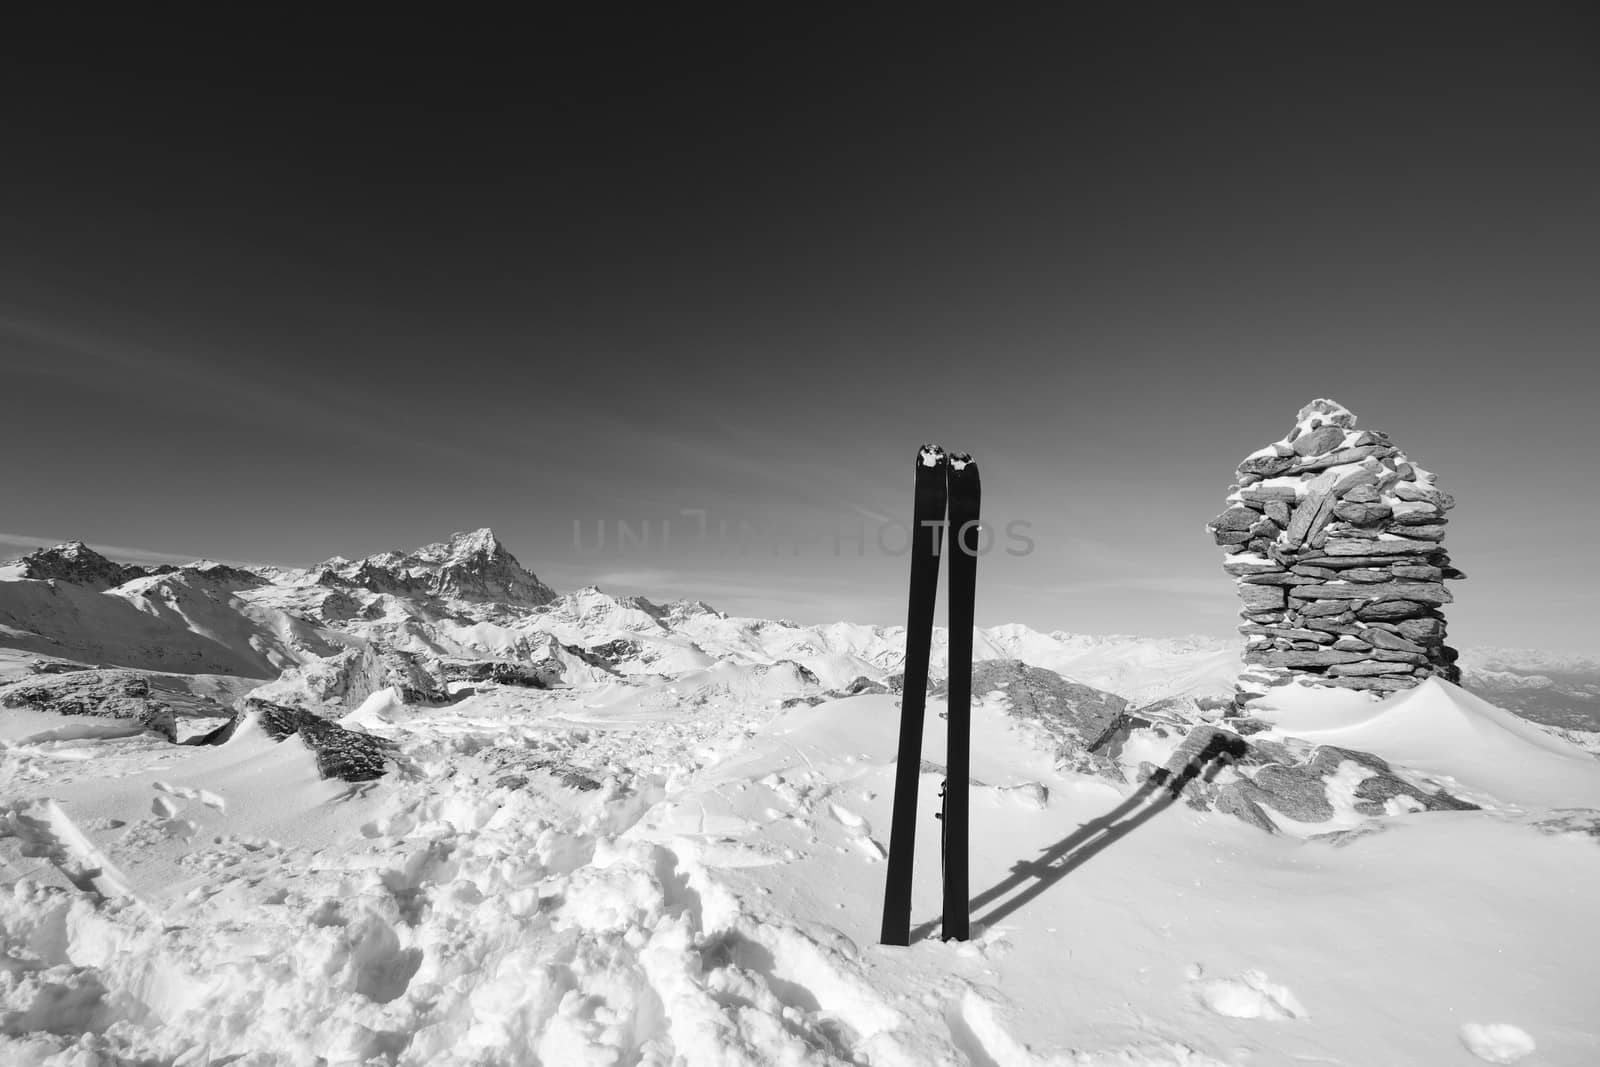 Tour ski on the summit by fbxx